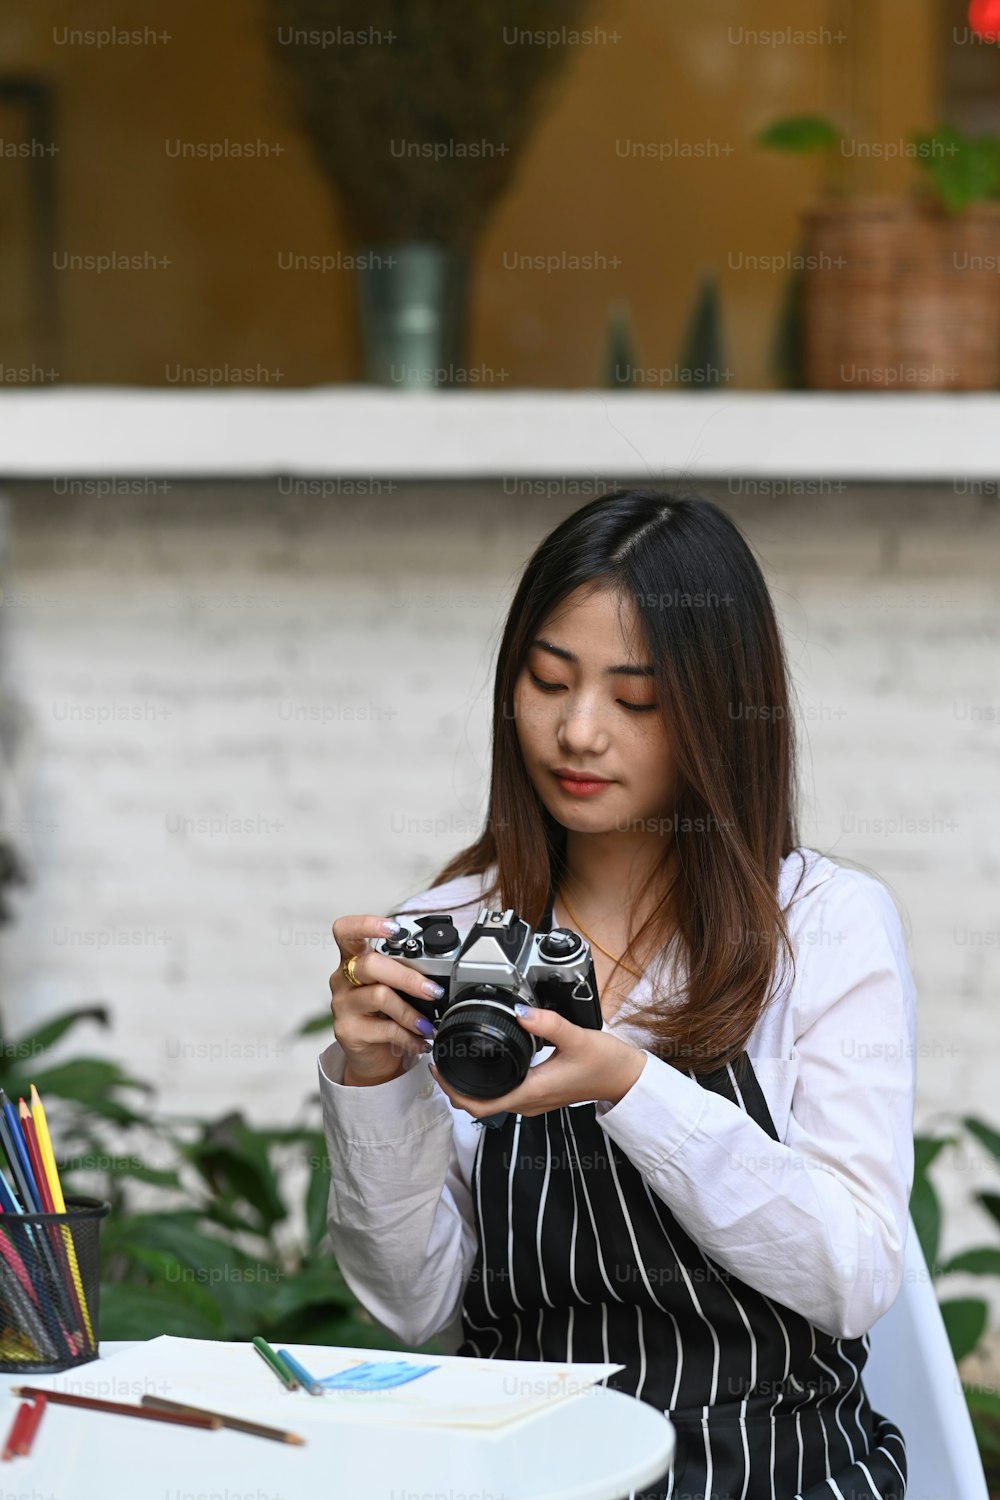 Retrato de uma jovem artista ou fotógrafa verificando a foto na câmera enquanto estava sentada em sua oficina.